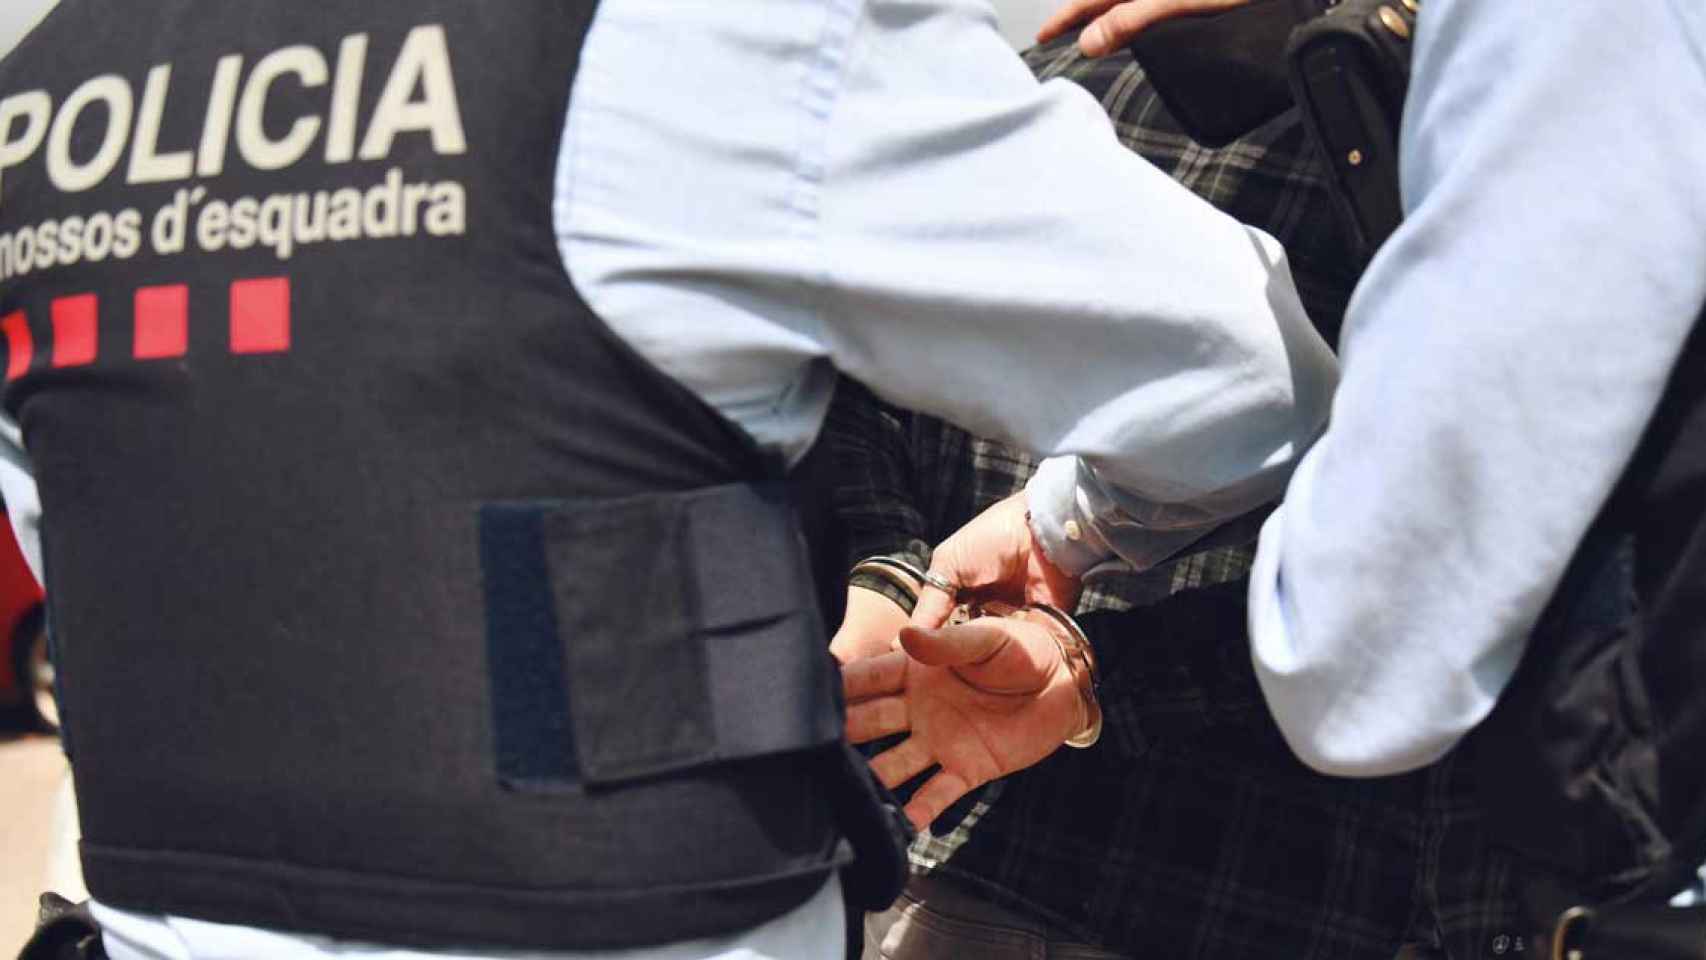 Dos agentes de los Mossos ponen las esposas a un detenido / MOSSOS